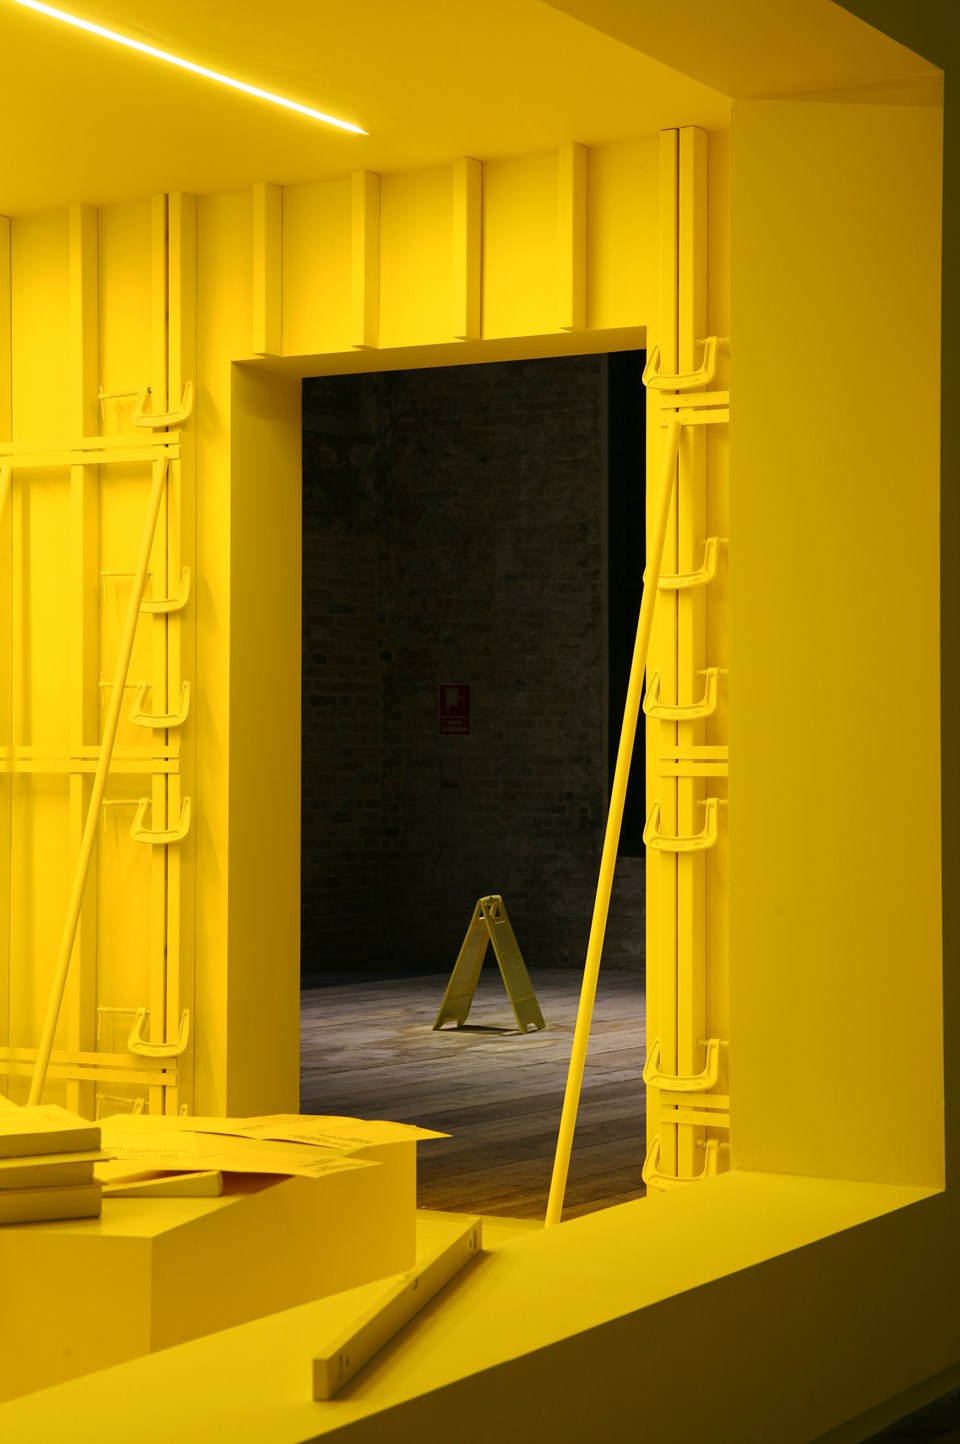 Venedik Bienali’nin 17. Uluslararası Mimarlık Sergisi Türkiye Pavyonu 22 Mayıs'ta açılıyor - 1